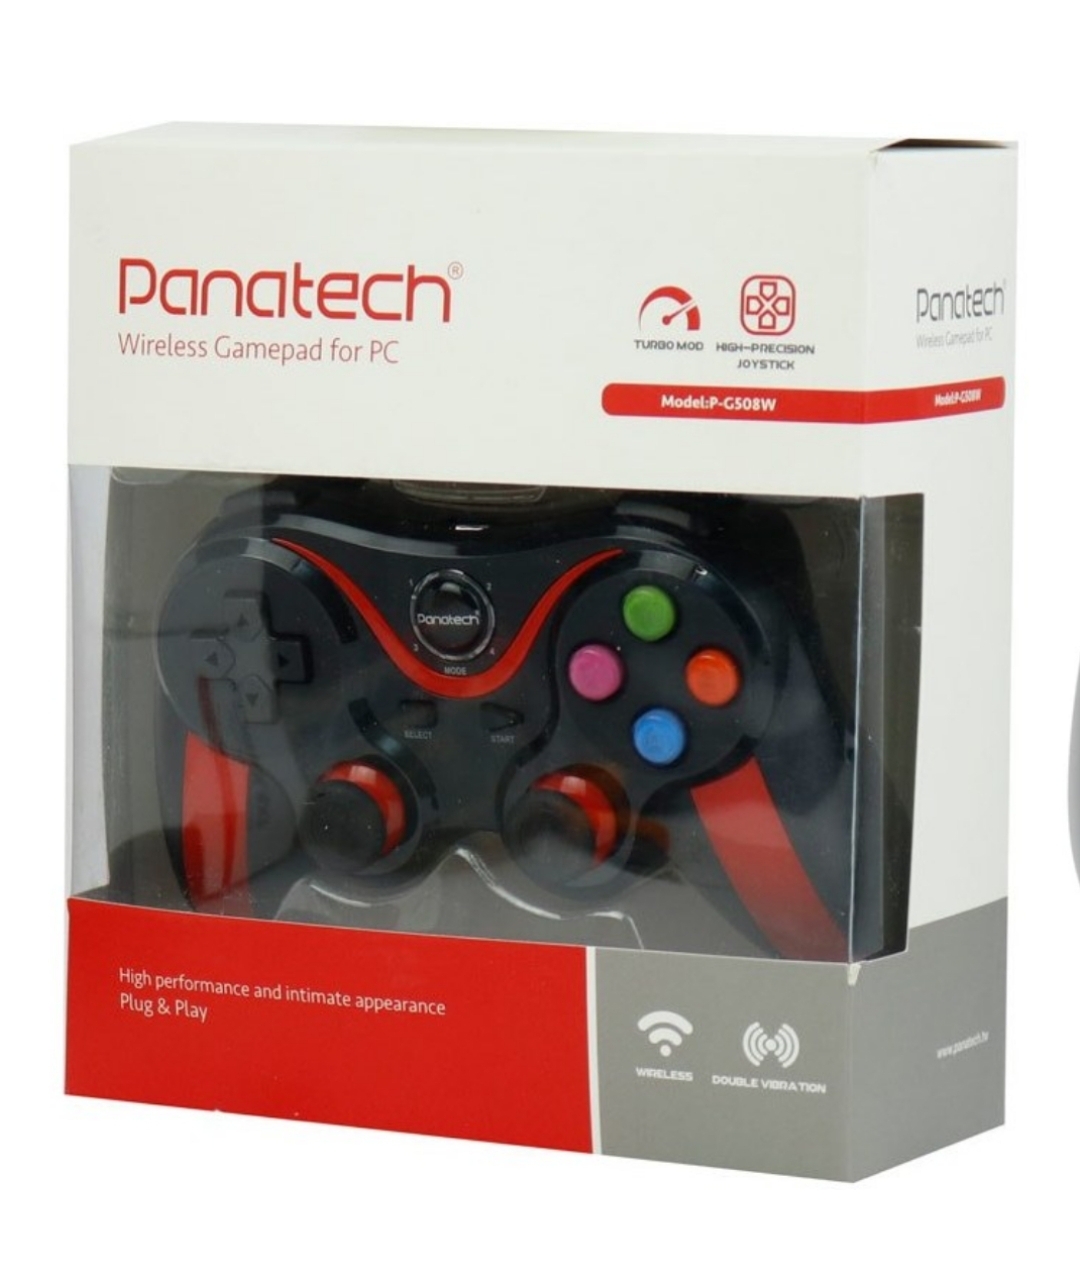 دسته بازی تک شوک دار بی سیم پاناتک Panatech P-G508W Panatech G508W Wireless Gamepad